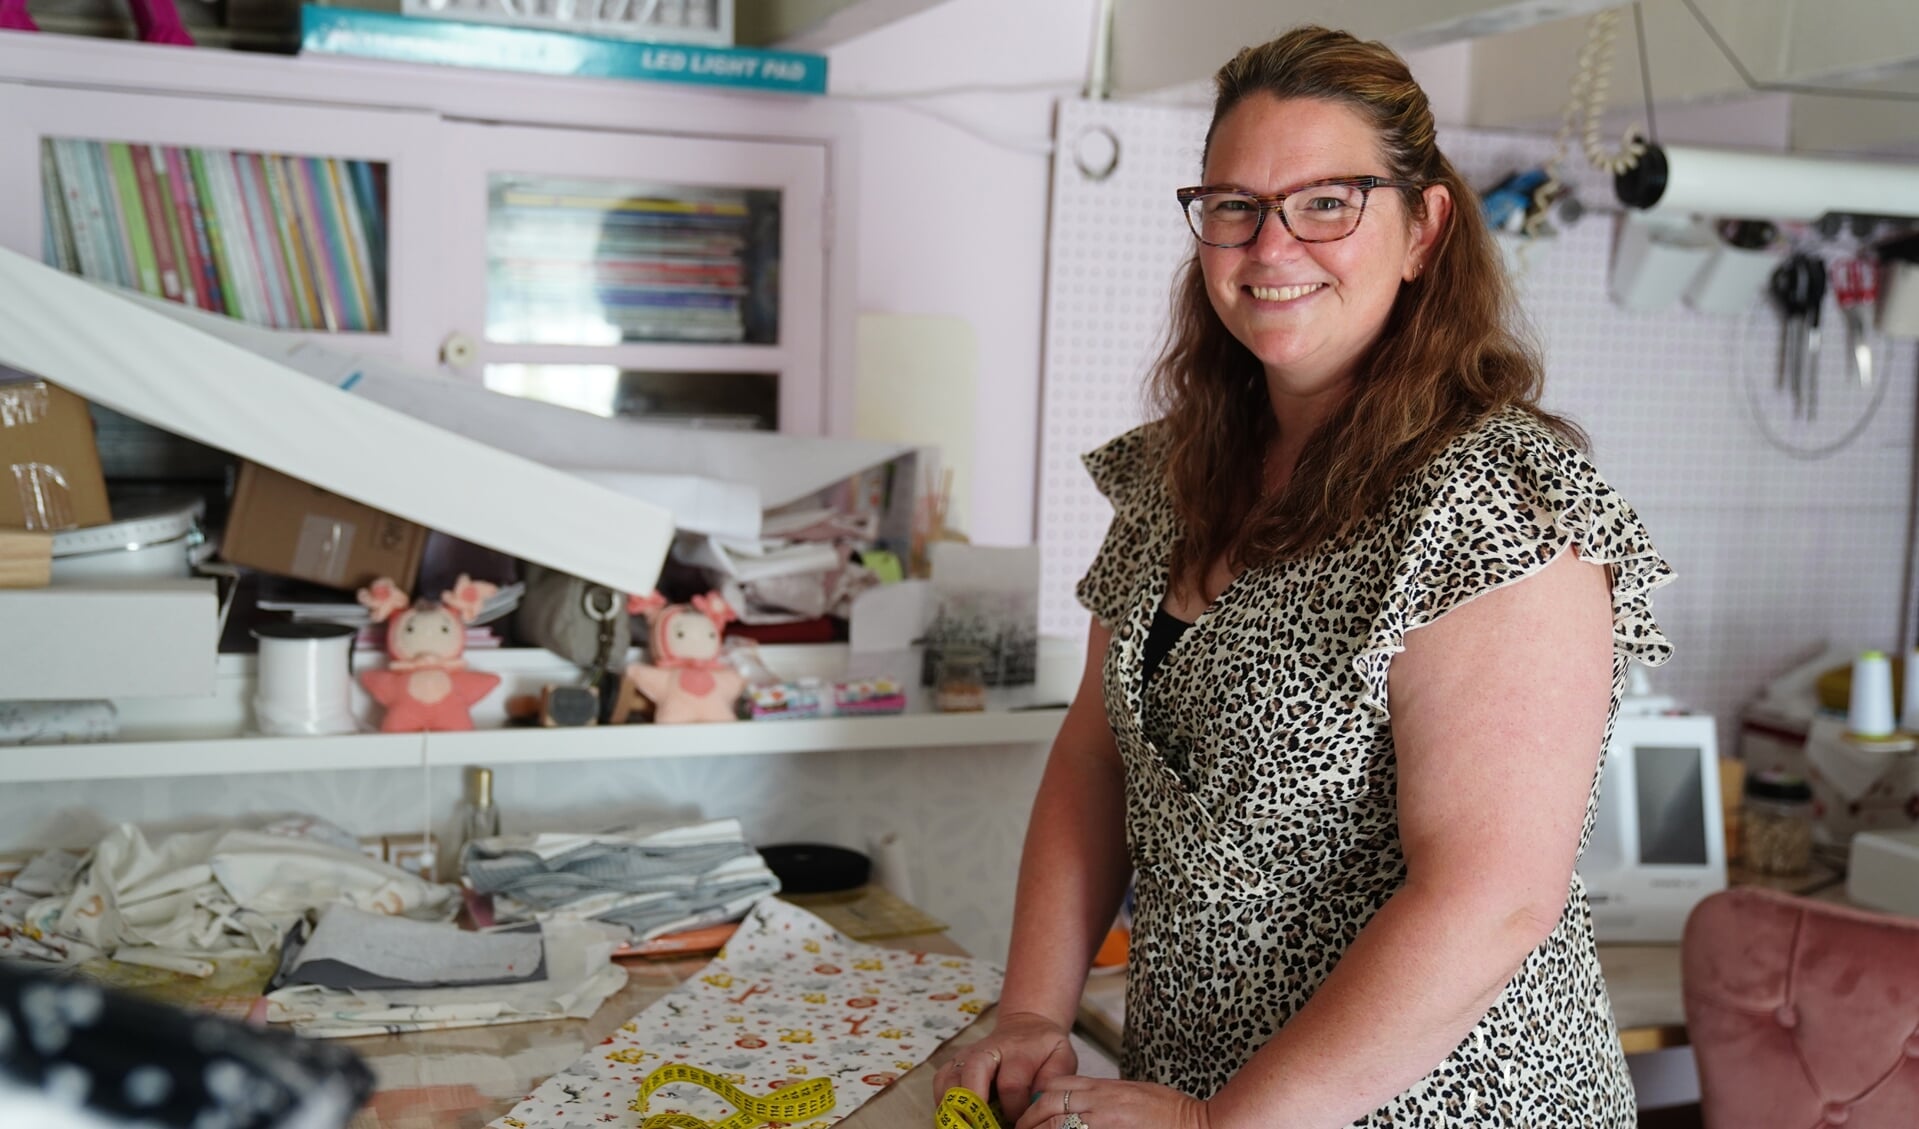 Patricia ontwerpt en maakt alle baby-artikelen zelf in haar werkkamer. 